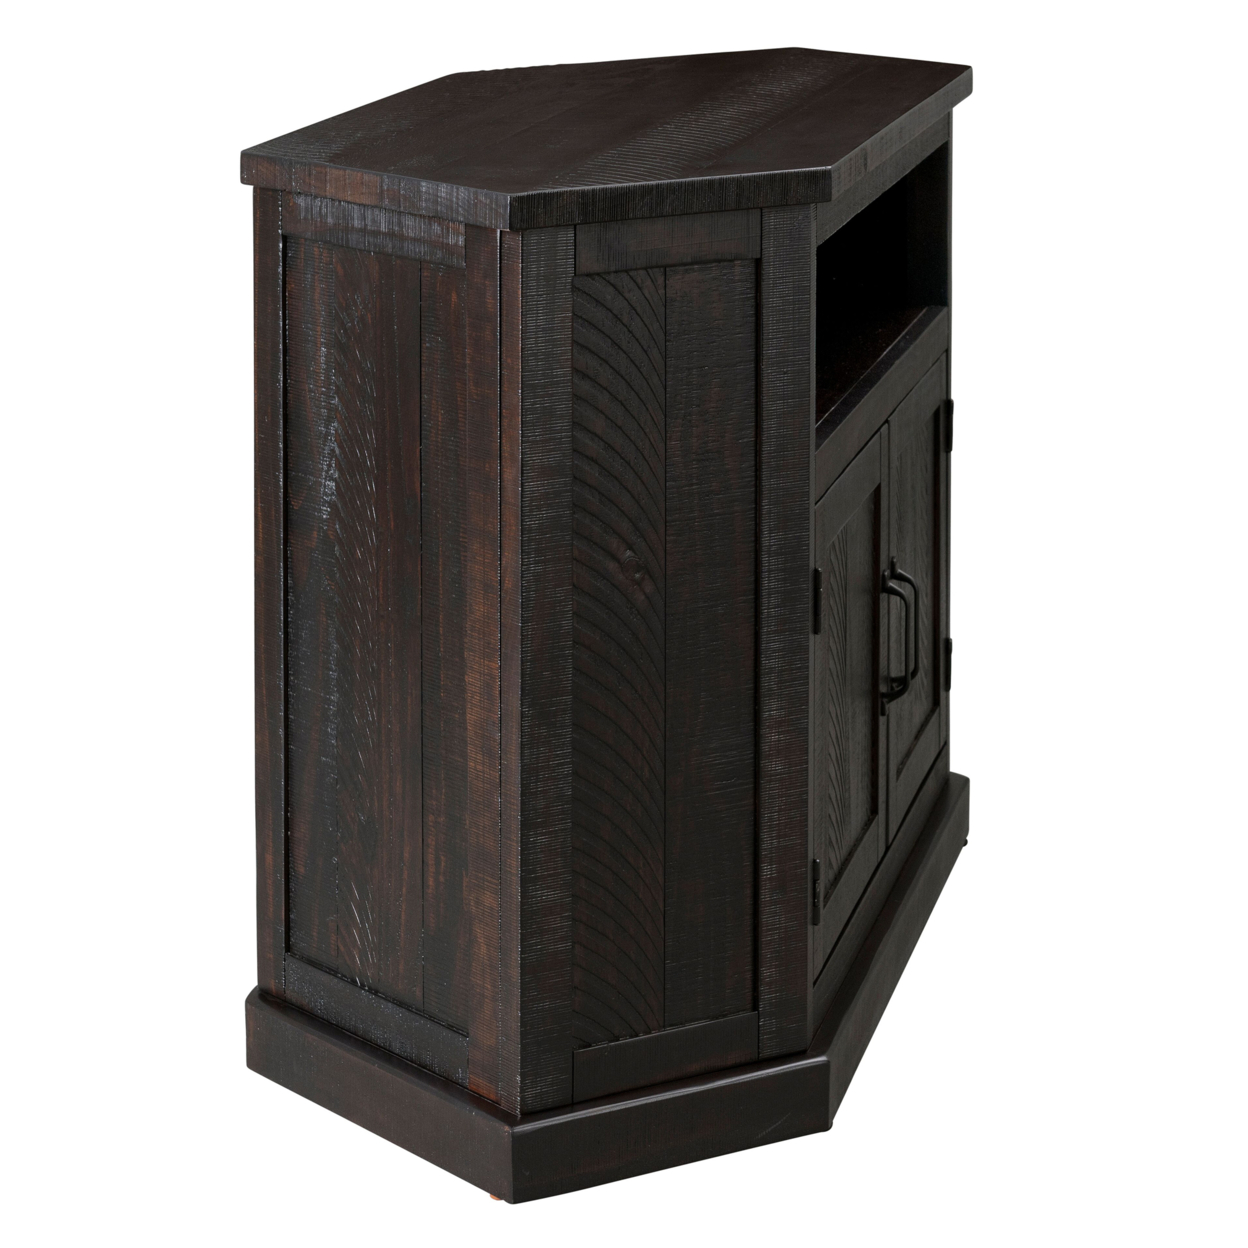 Rustic Wooden Corner TV Stand With 2 Door Cabinet, Espresso Brown- Saltoro Sherpi